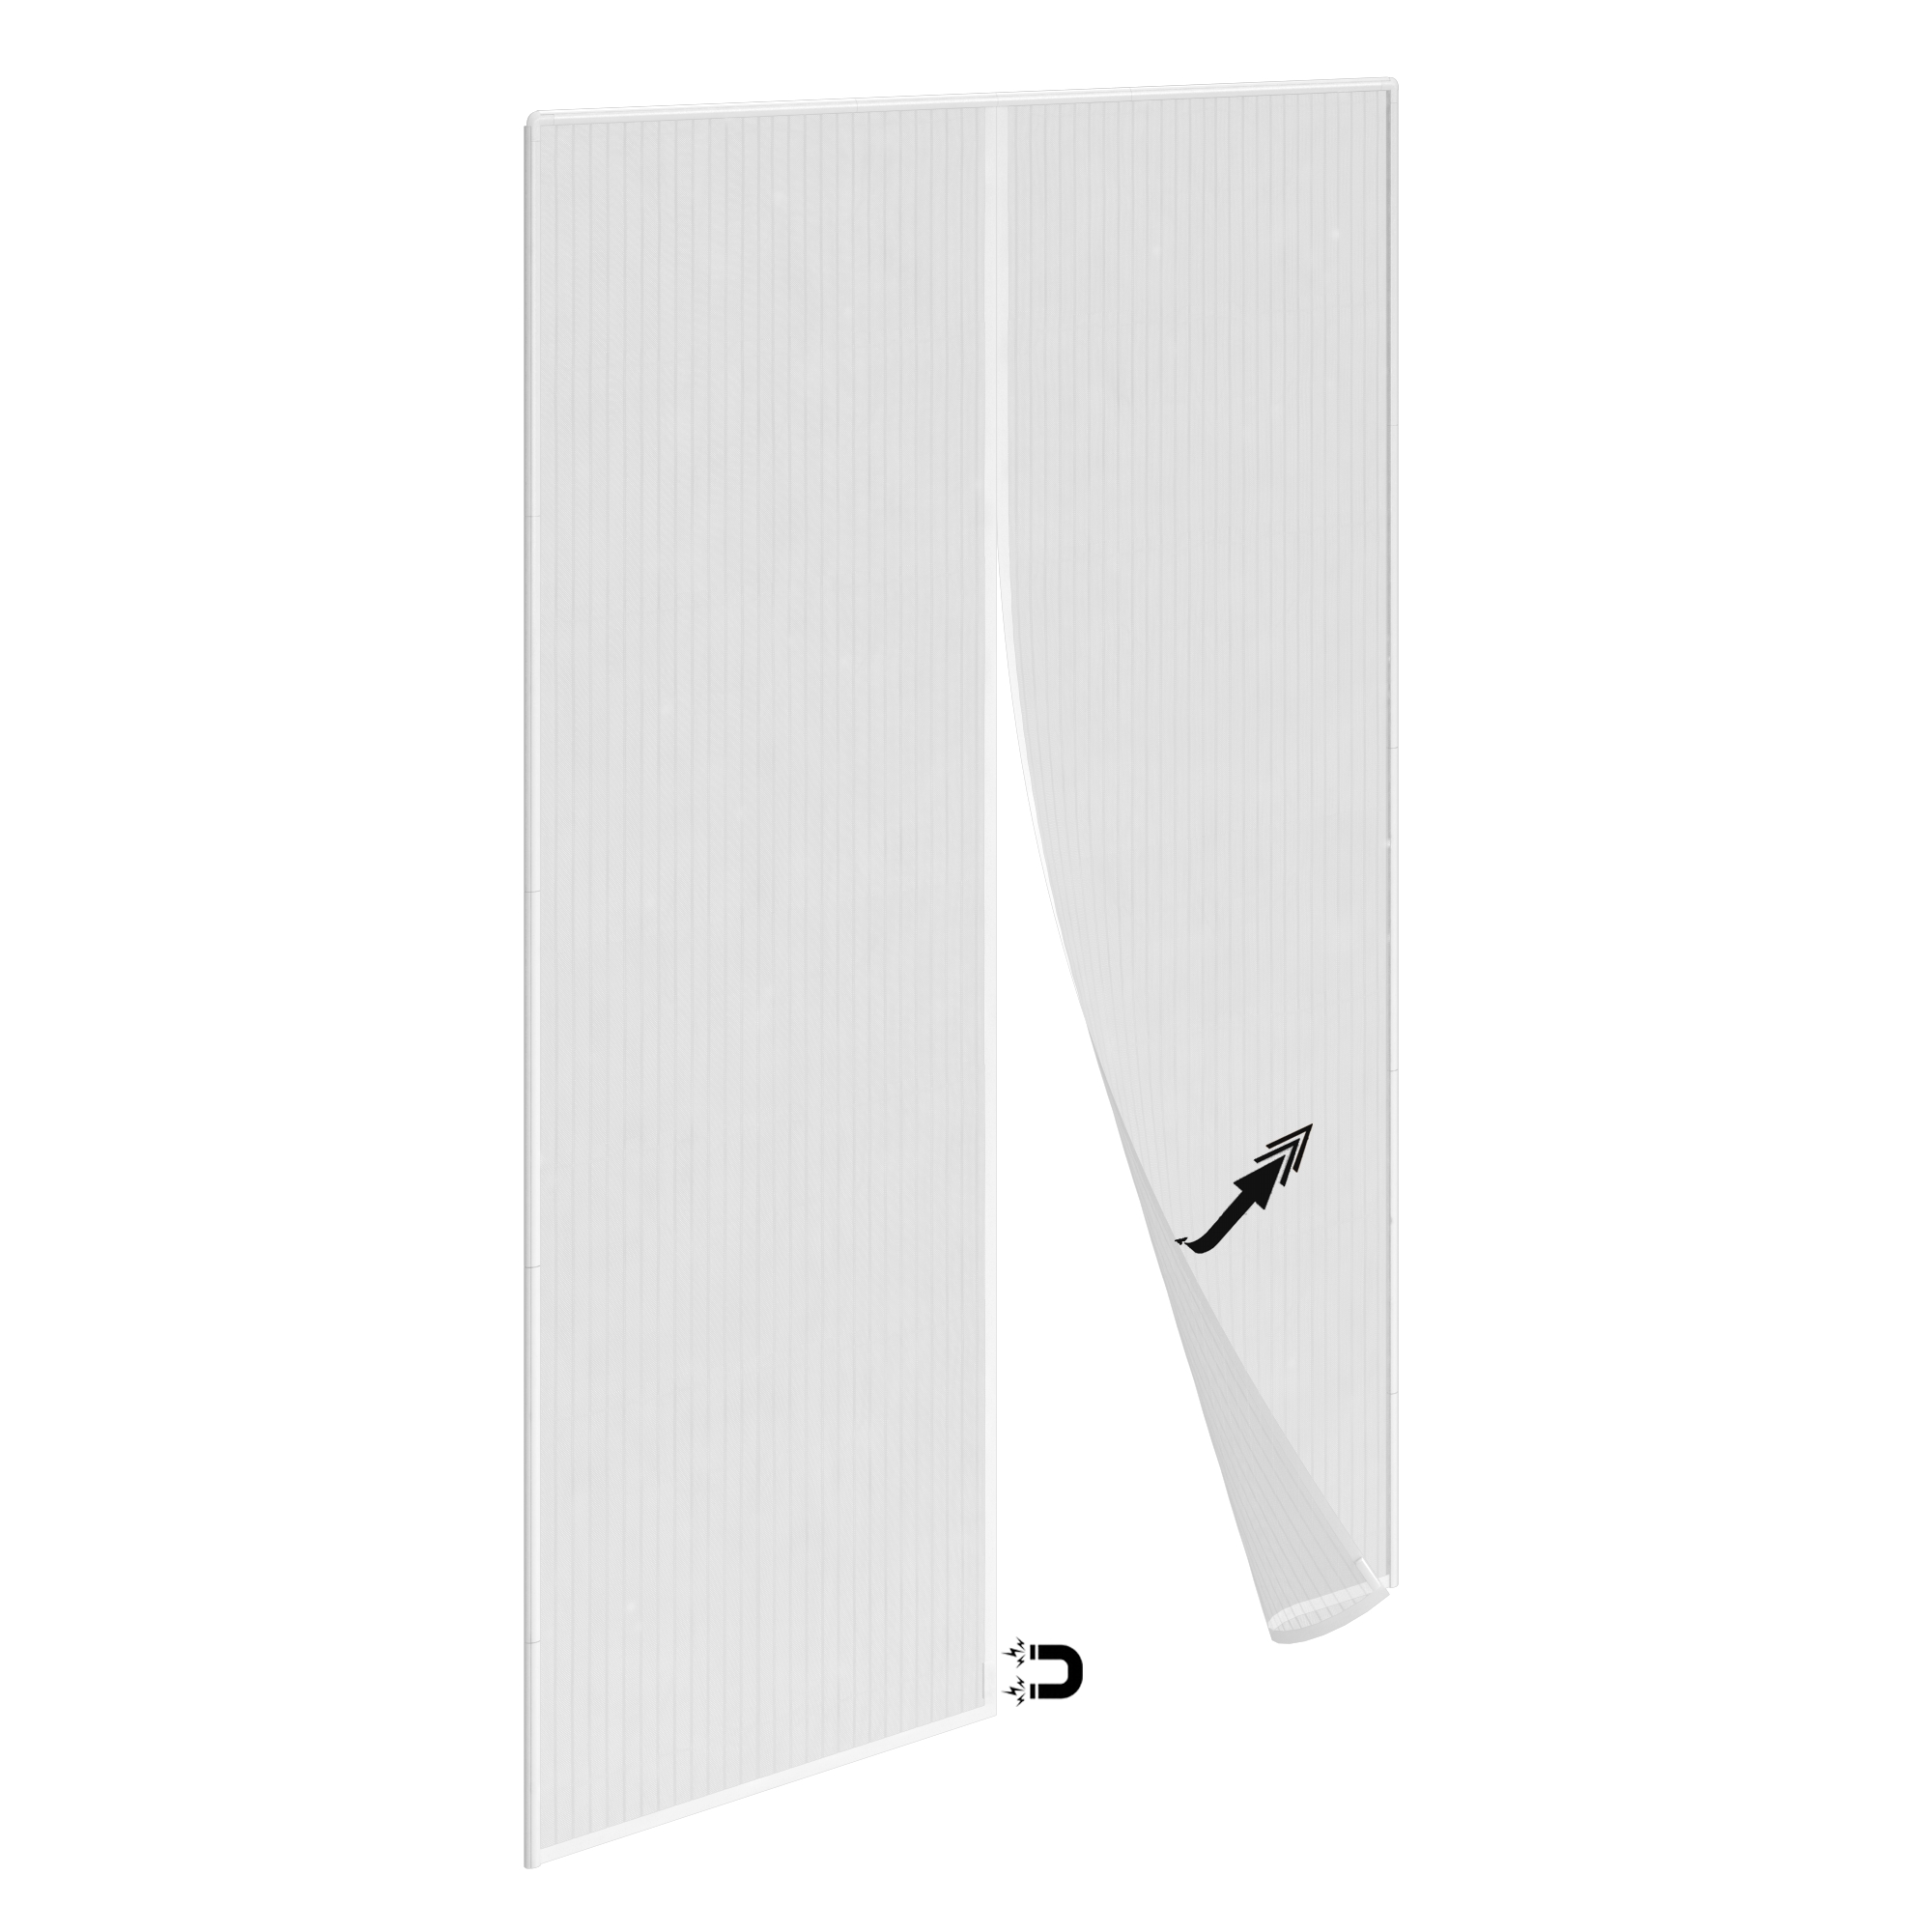 Tenda zanzariera regolabile magnetica per portafinestra L 150 x H 230 cm bianco - 3